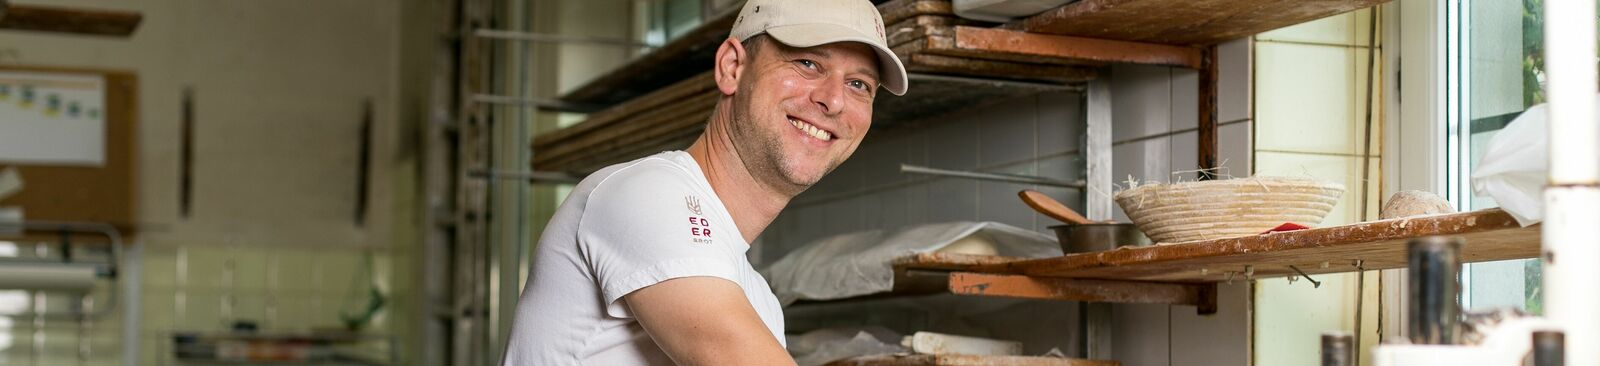 Bäckermeister David Eder von "Ederbrot"